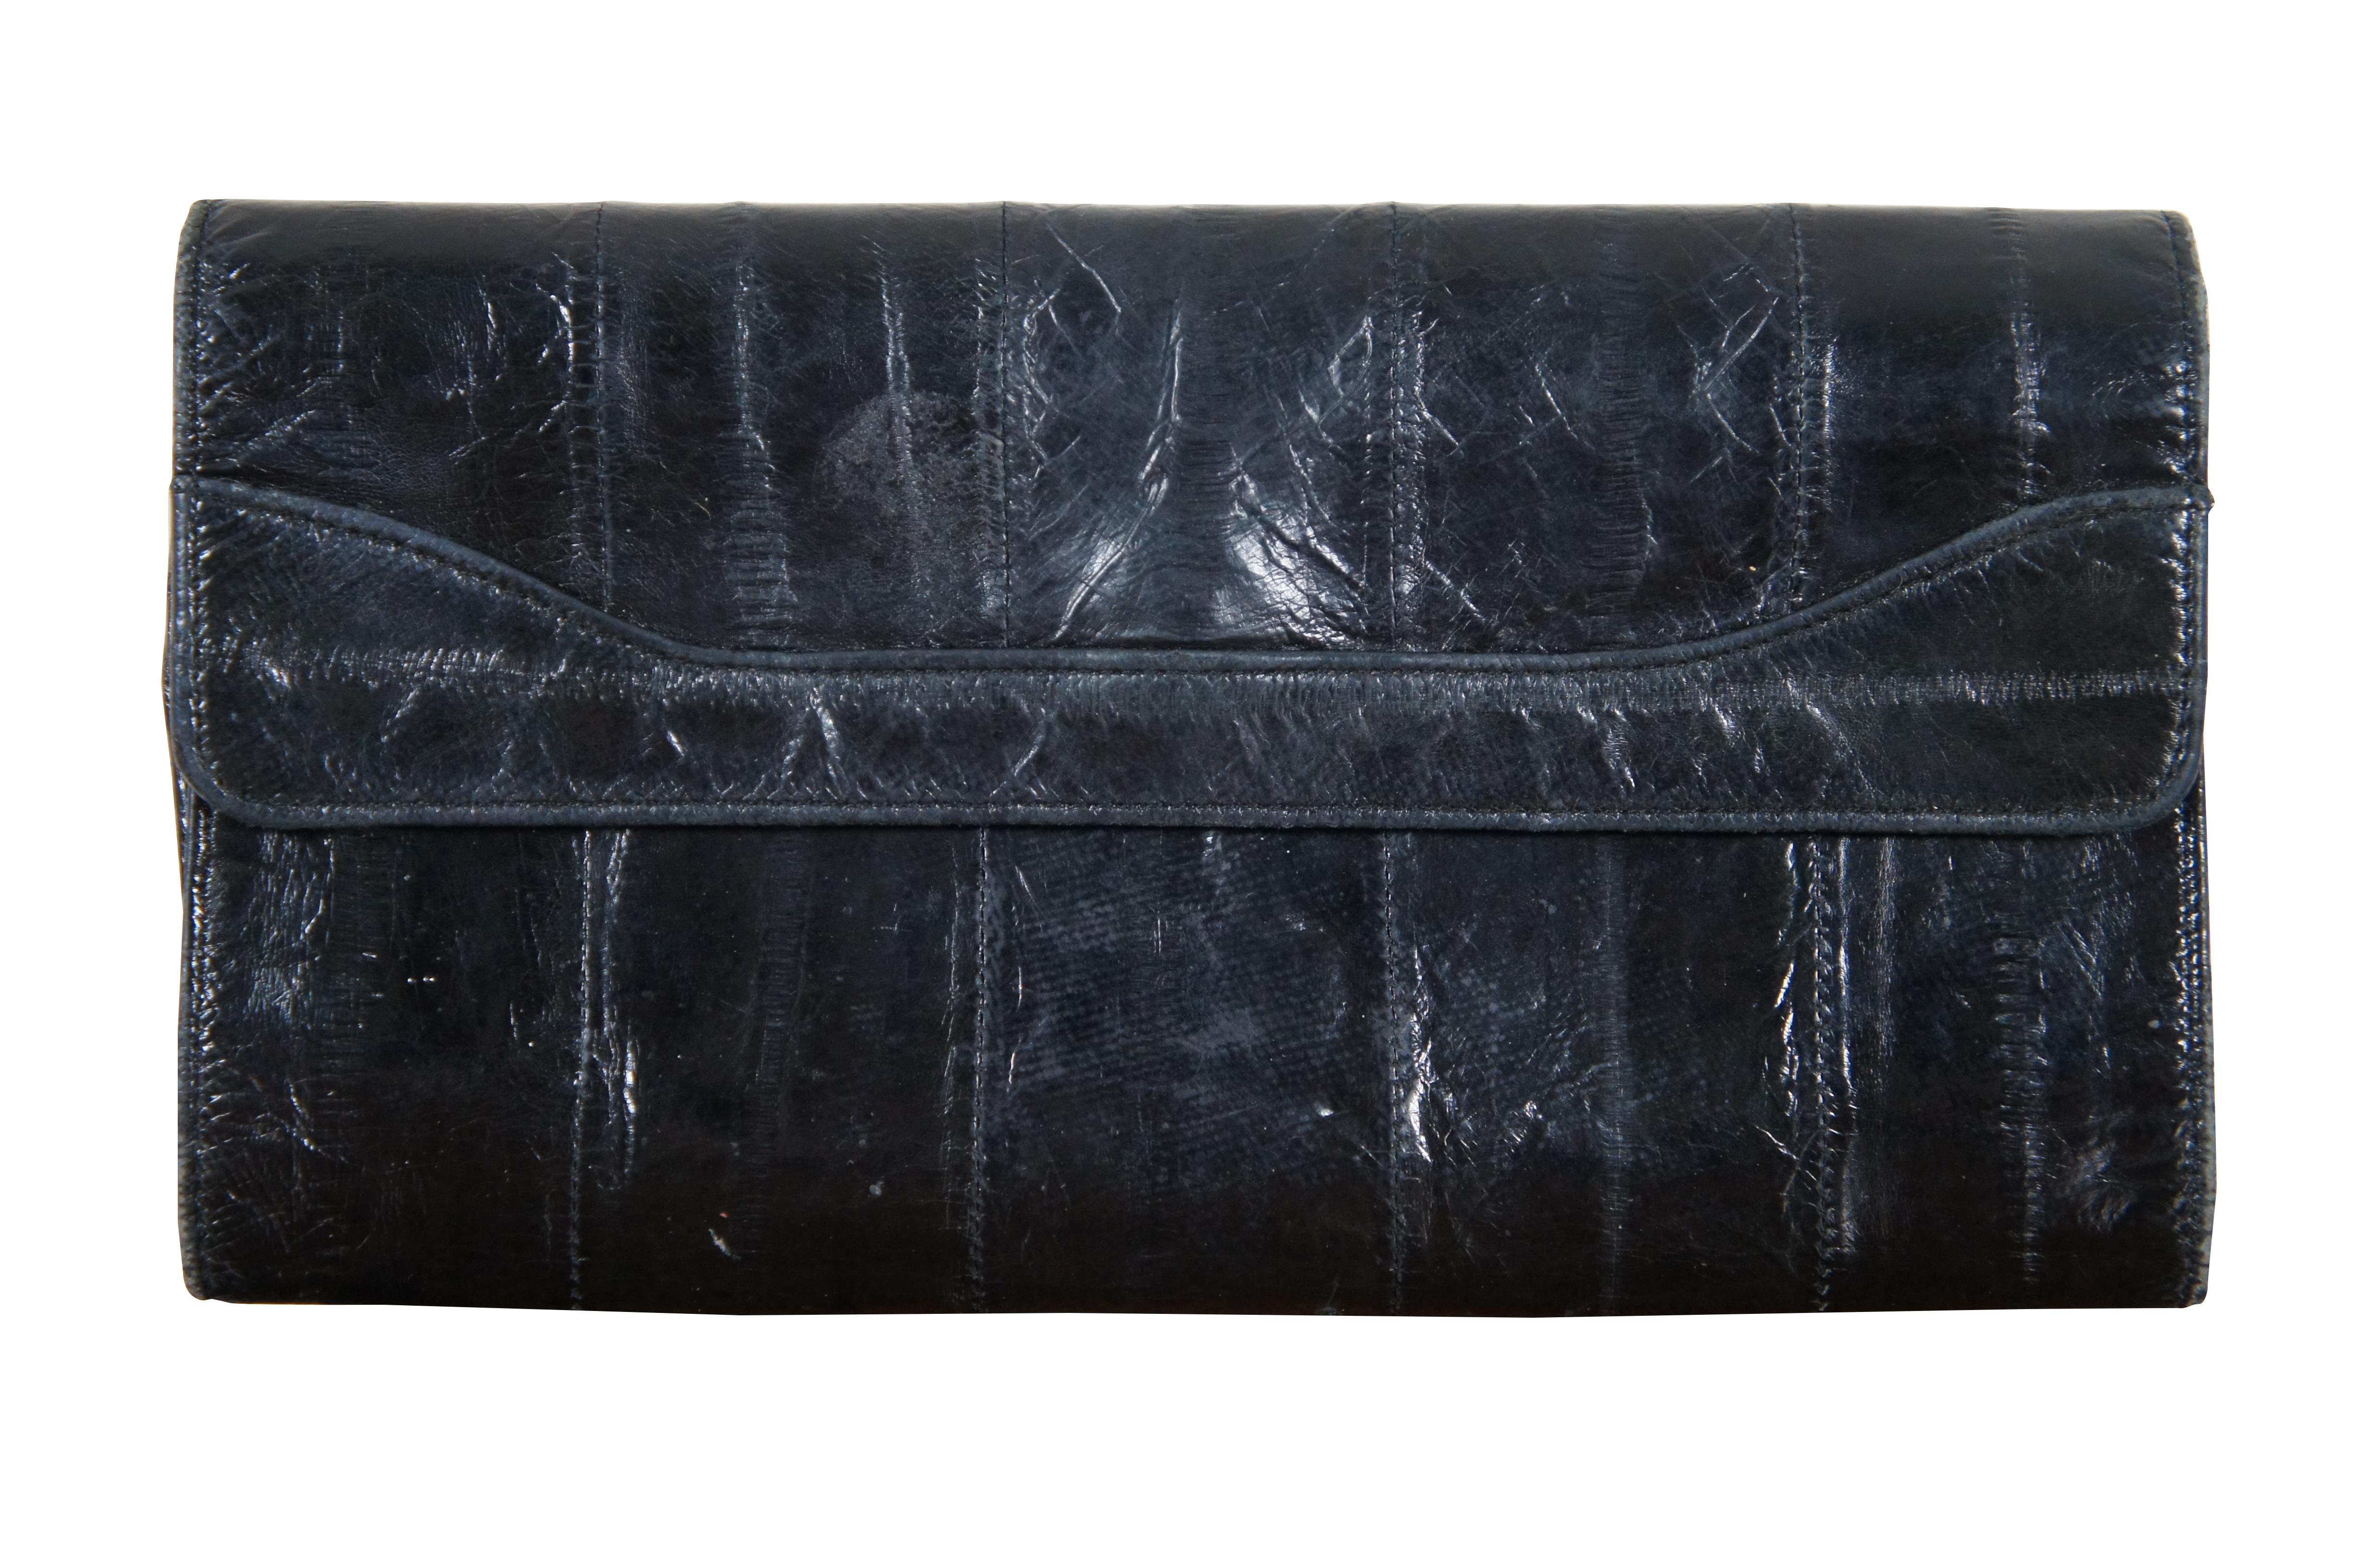 Lot von fünf Vintage Aal Haut Geldbörsen, darunter eine schwarze Tri-Fold Clutch / Billfold, schwarz bi-fold Brieftasche, mittel-braun Brieftasche, mittel-braun Reißverschlusstasche, und Burgunder Münze Geldbeutel / bi-fold Brieftasche.

Größte -